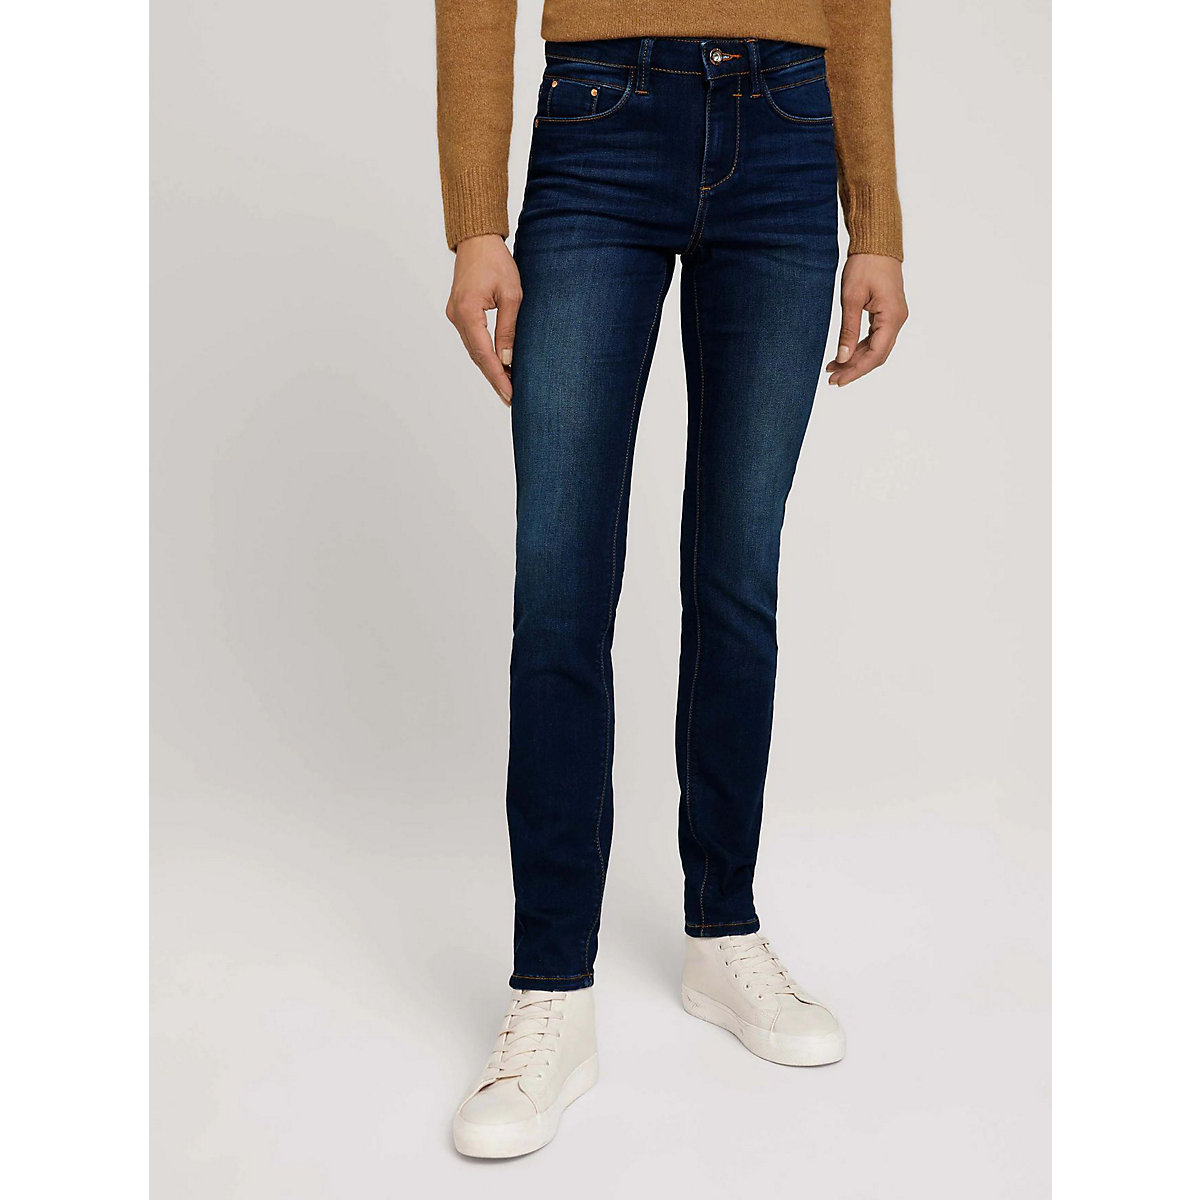 TOM TAILOR Skinny Fit Jeans Mid Waist Denim Hose aus Bio Baumwolle ALEXA dunkelblau